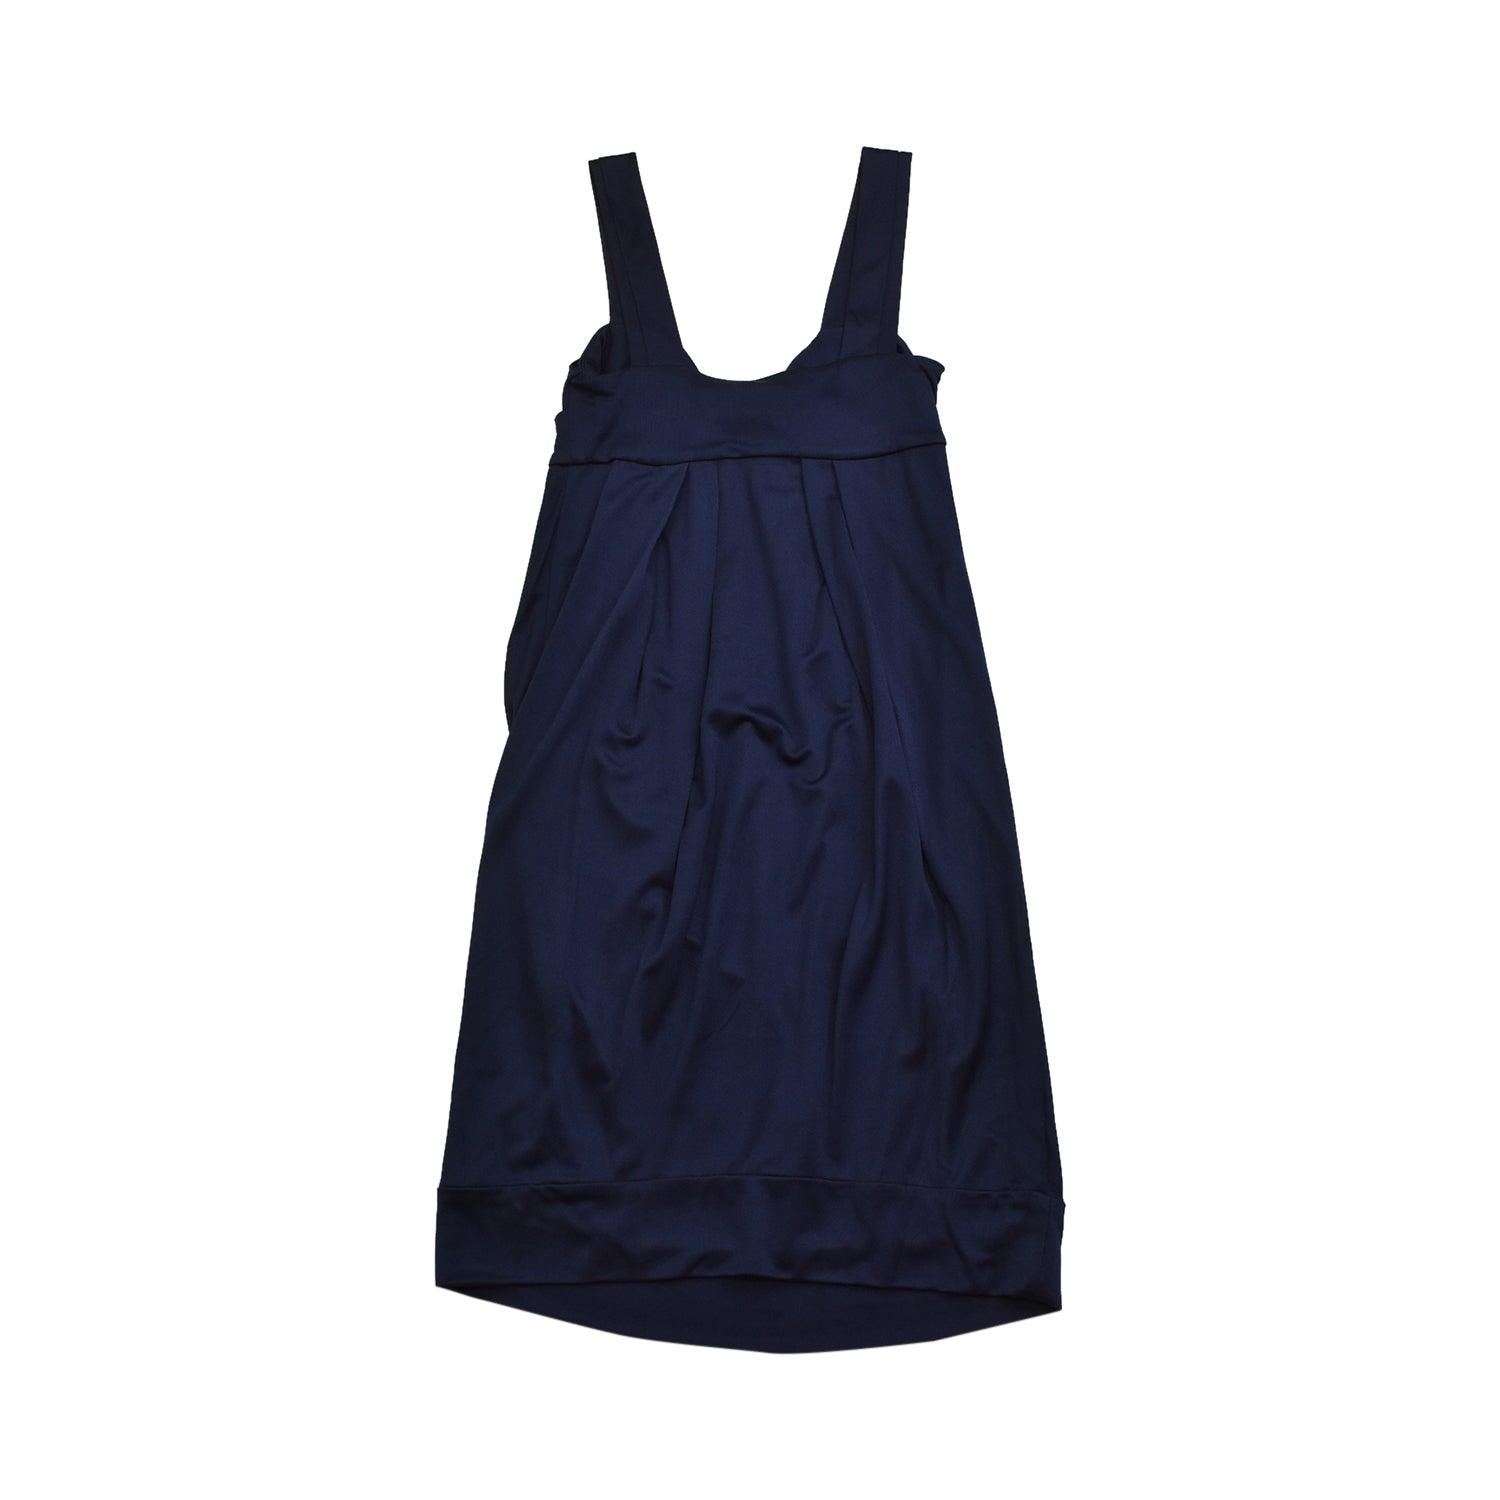 Diane Von Furstenberg Mini Dress - Women's 0 - Fashionably Yours